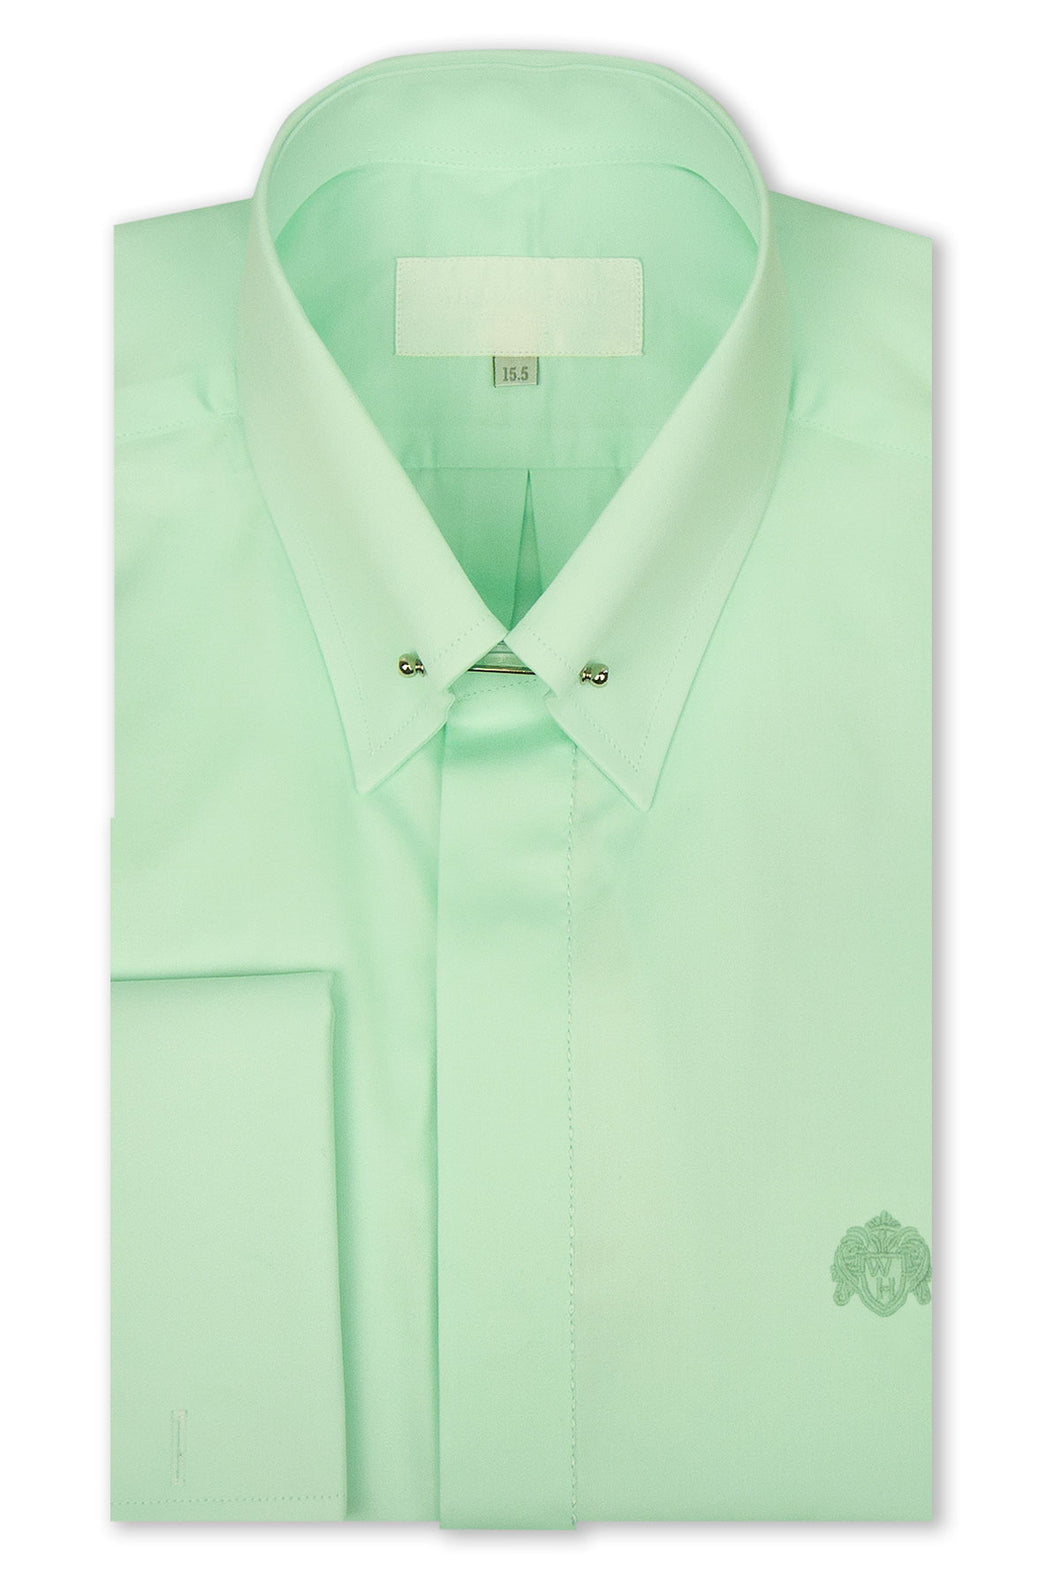 Mint Green Pin Collar Shirt